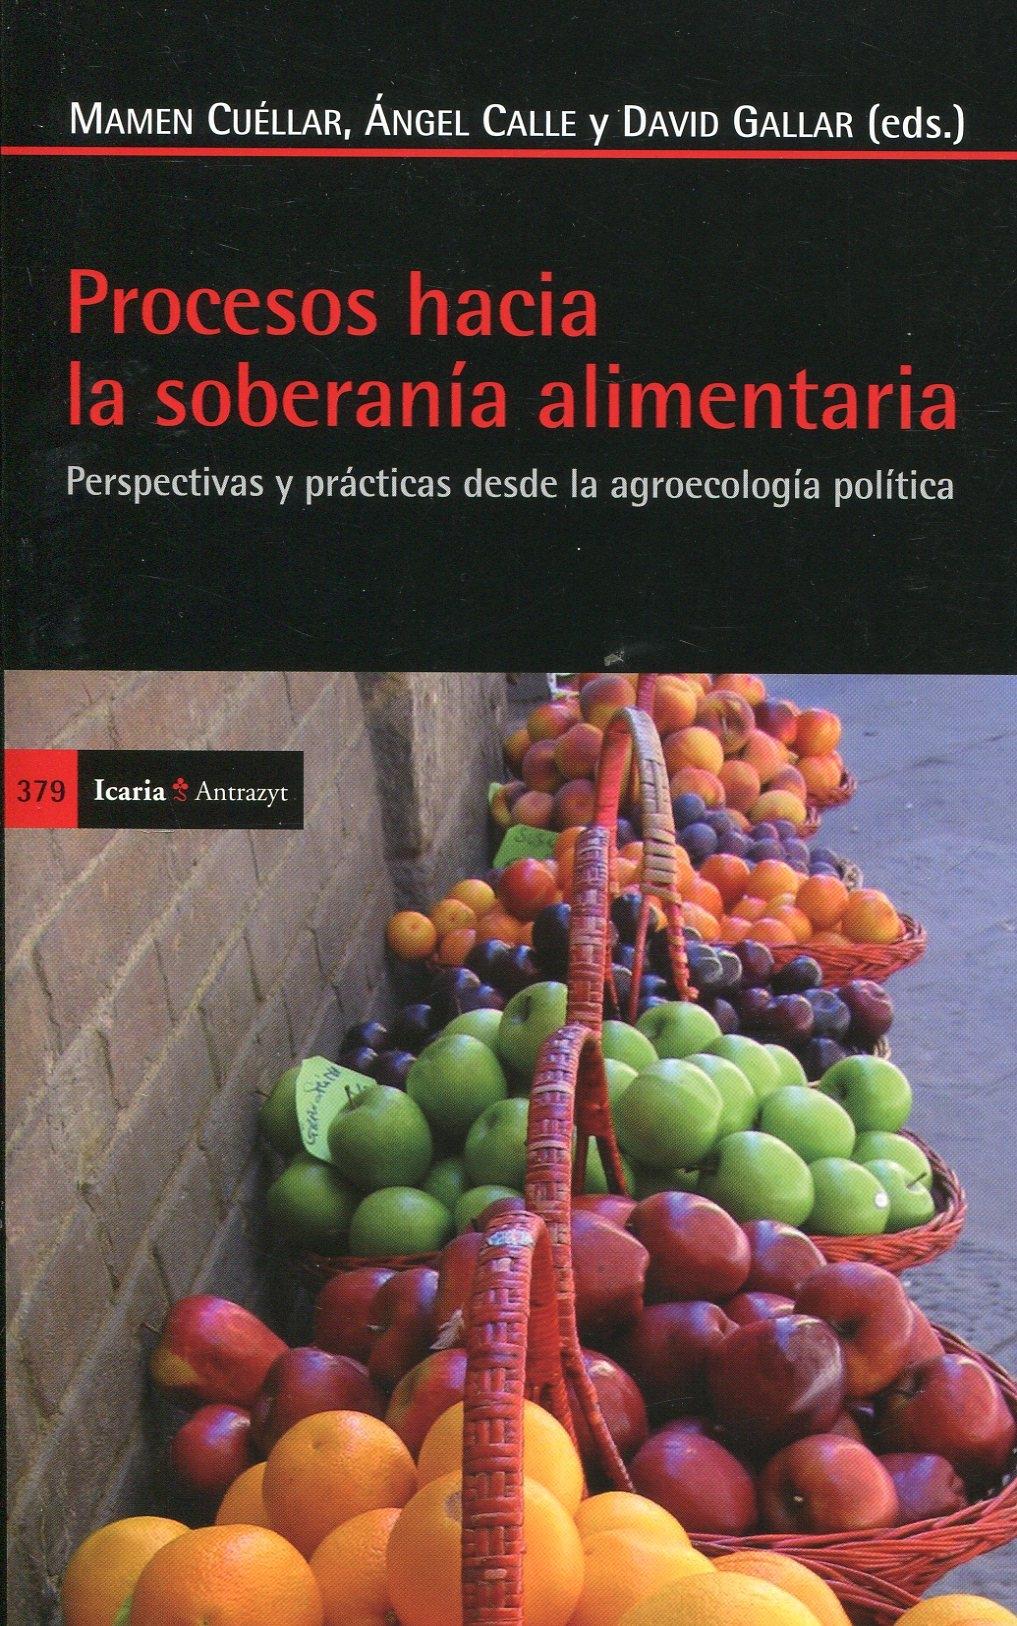 Procesos hacia la soberanía alimentaria "Perspectivas y prácticas desde la agroecología política"